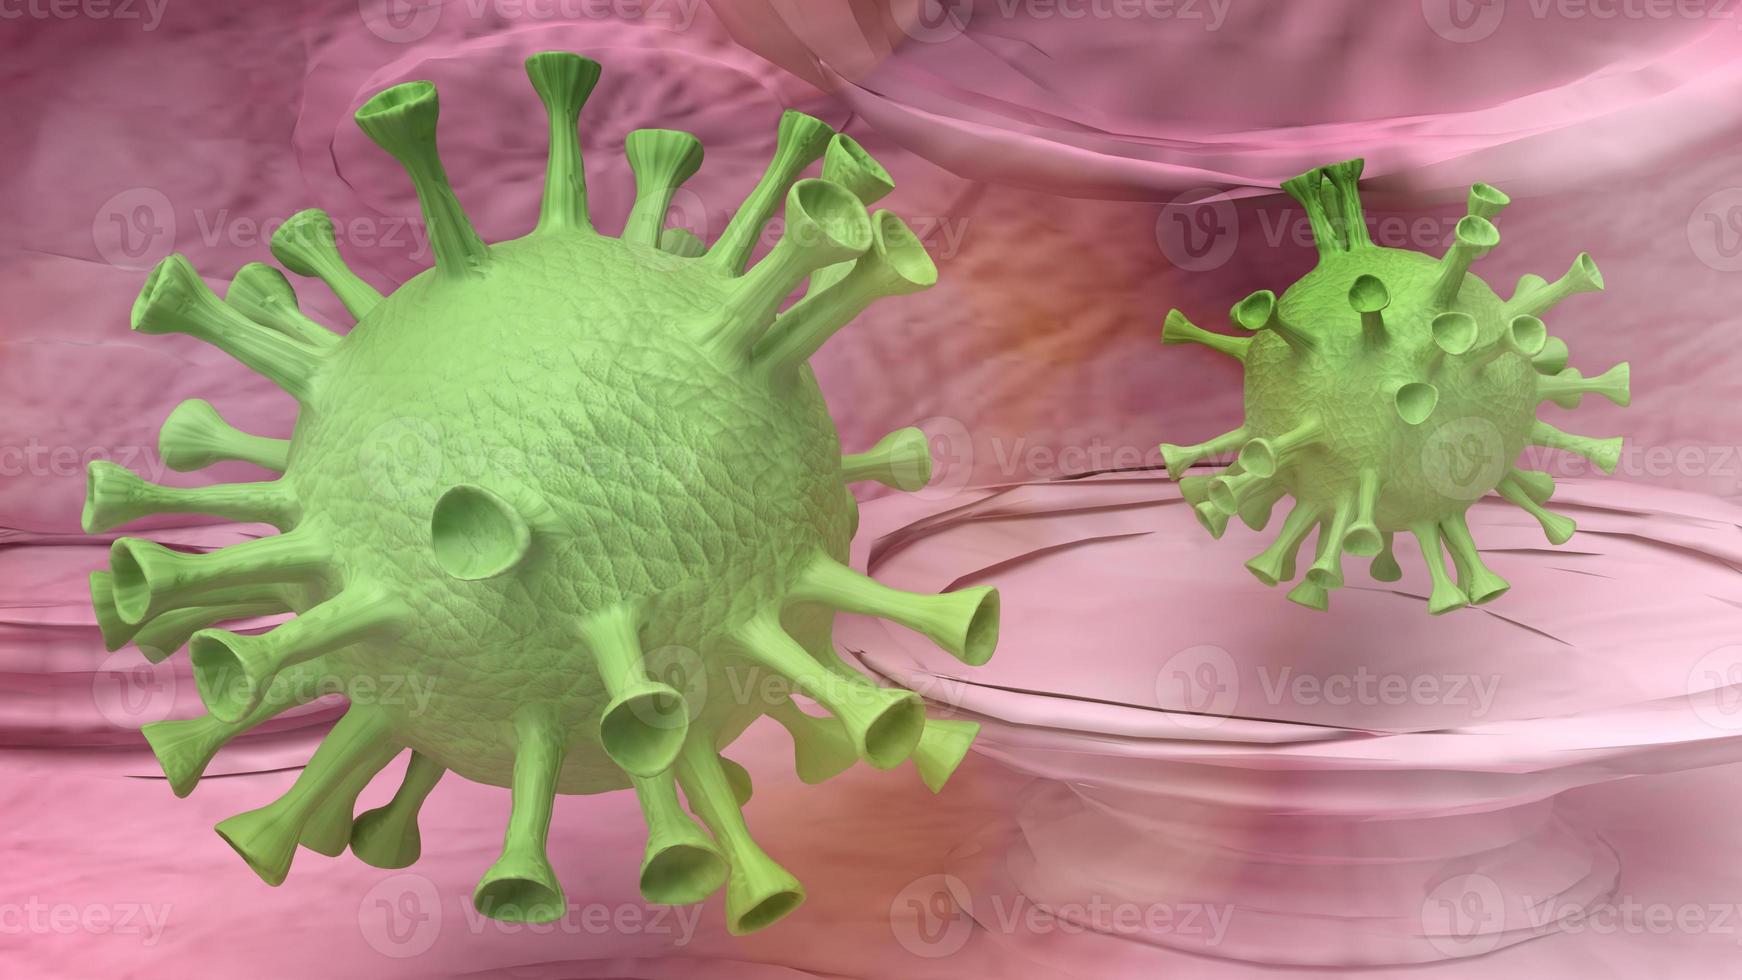 covid 19 virus micro-organisme 3D-rendering voor medische inhoud. foto